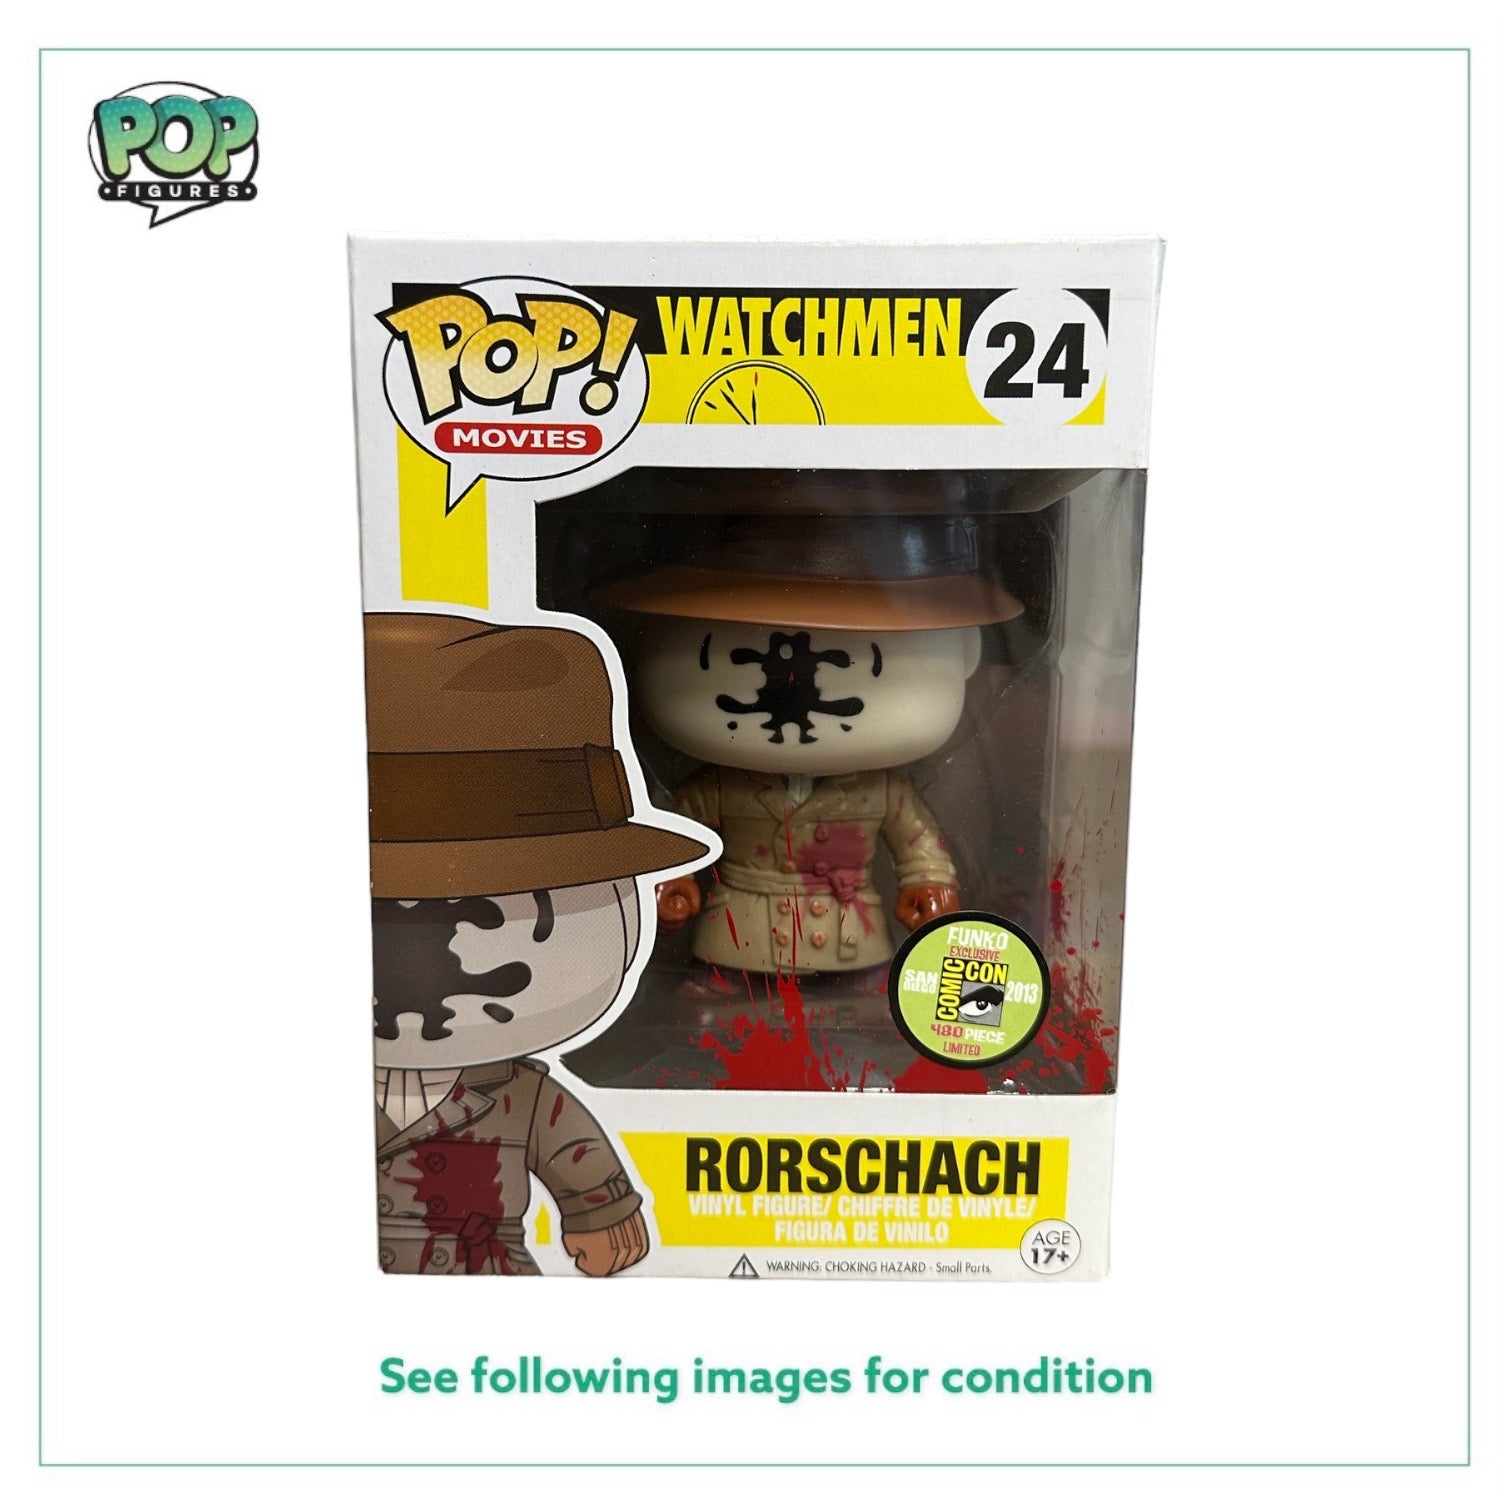 Rorschach #24 (Bloody) Funko Pop! - Watchmen - SDCC 2013 Exclusive LE480 Pcs - Condition 8.5/10